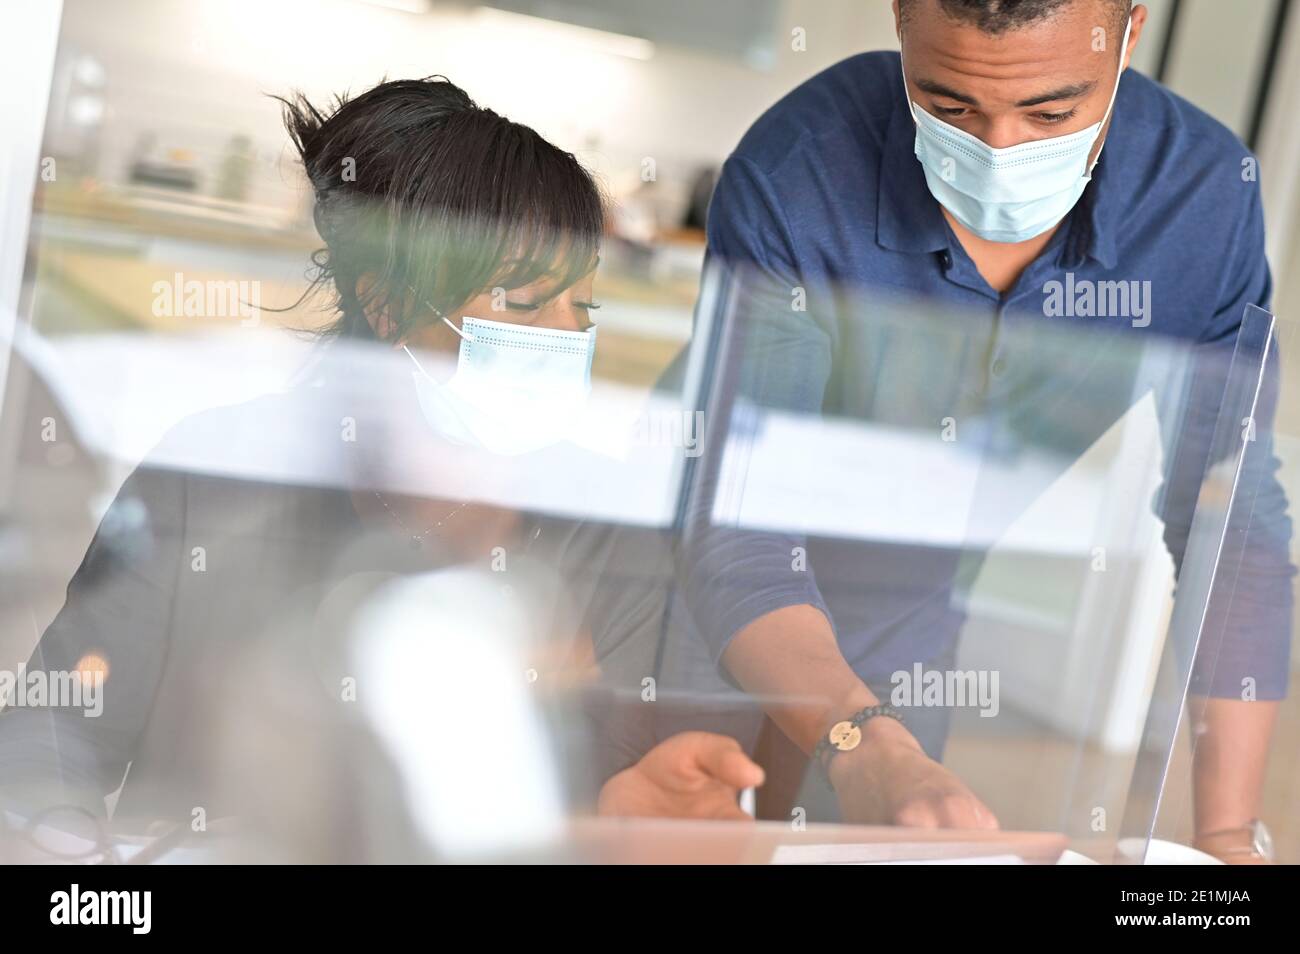 Les start-up travaillant dans un bureau de travail en espace commun, portant un masque facial pendant une pandémie de 19-ncov Banque D'Images